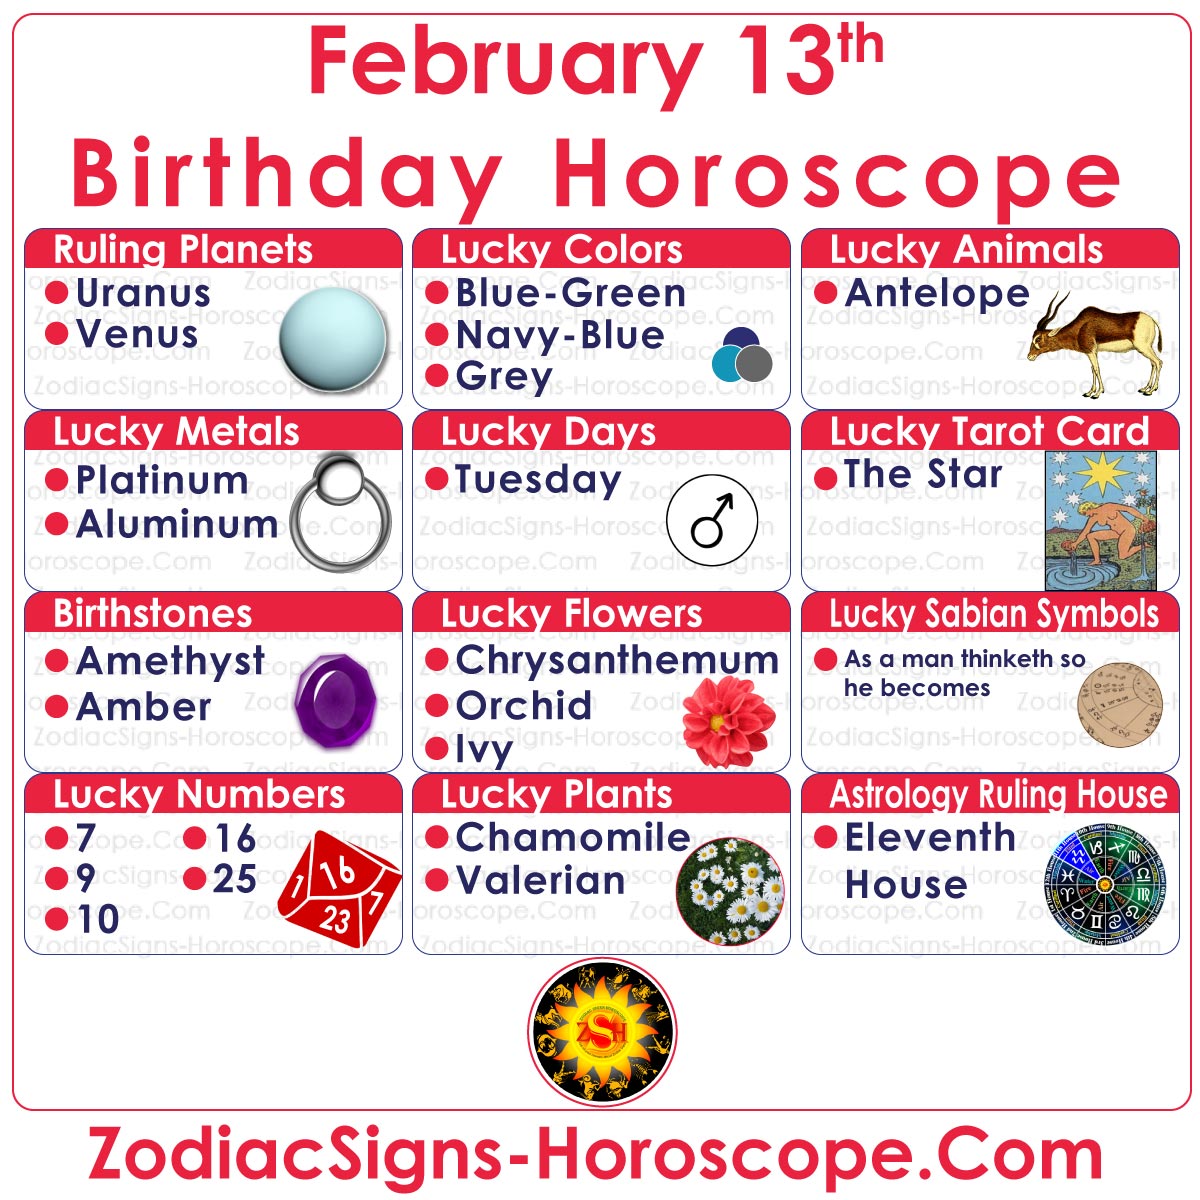 Quel horoscope est le 13 février?